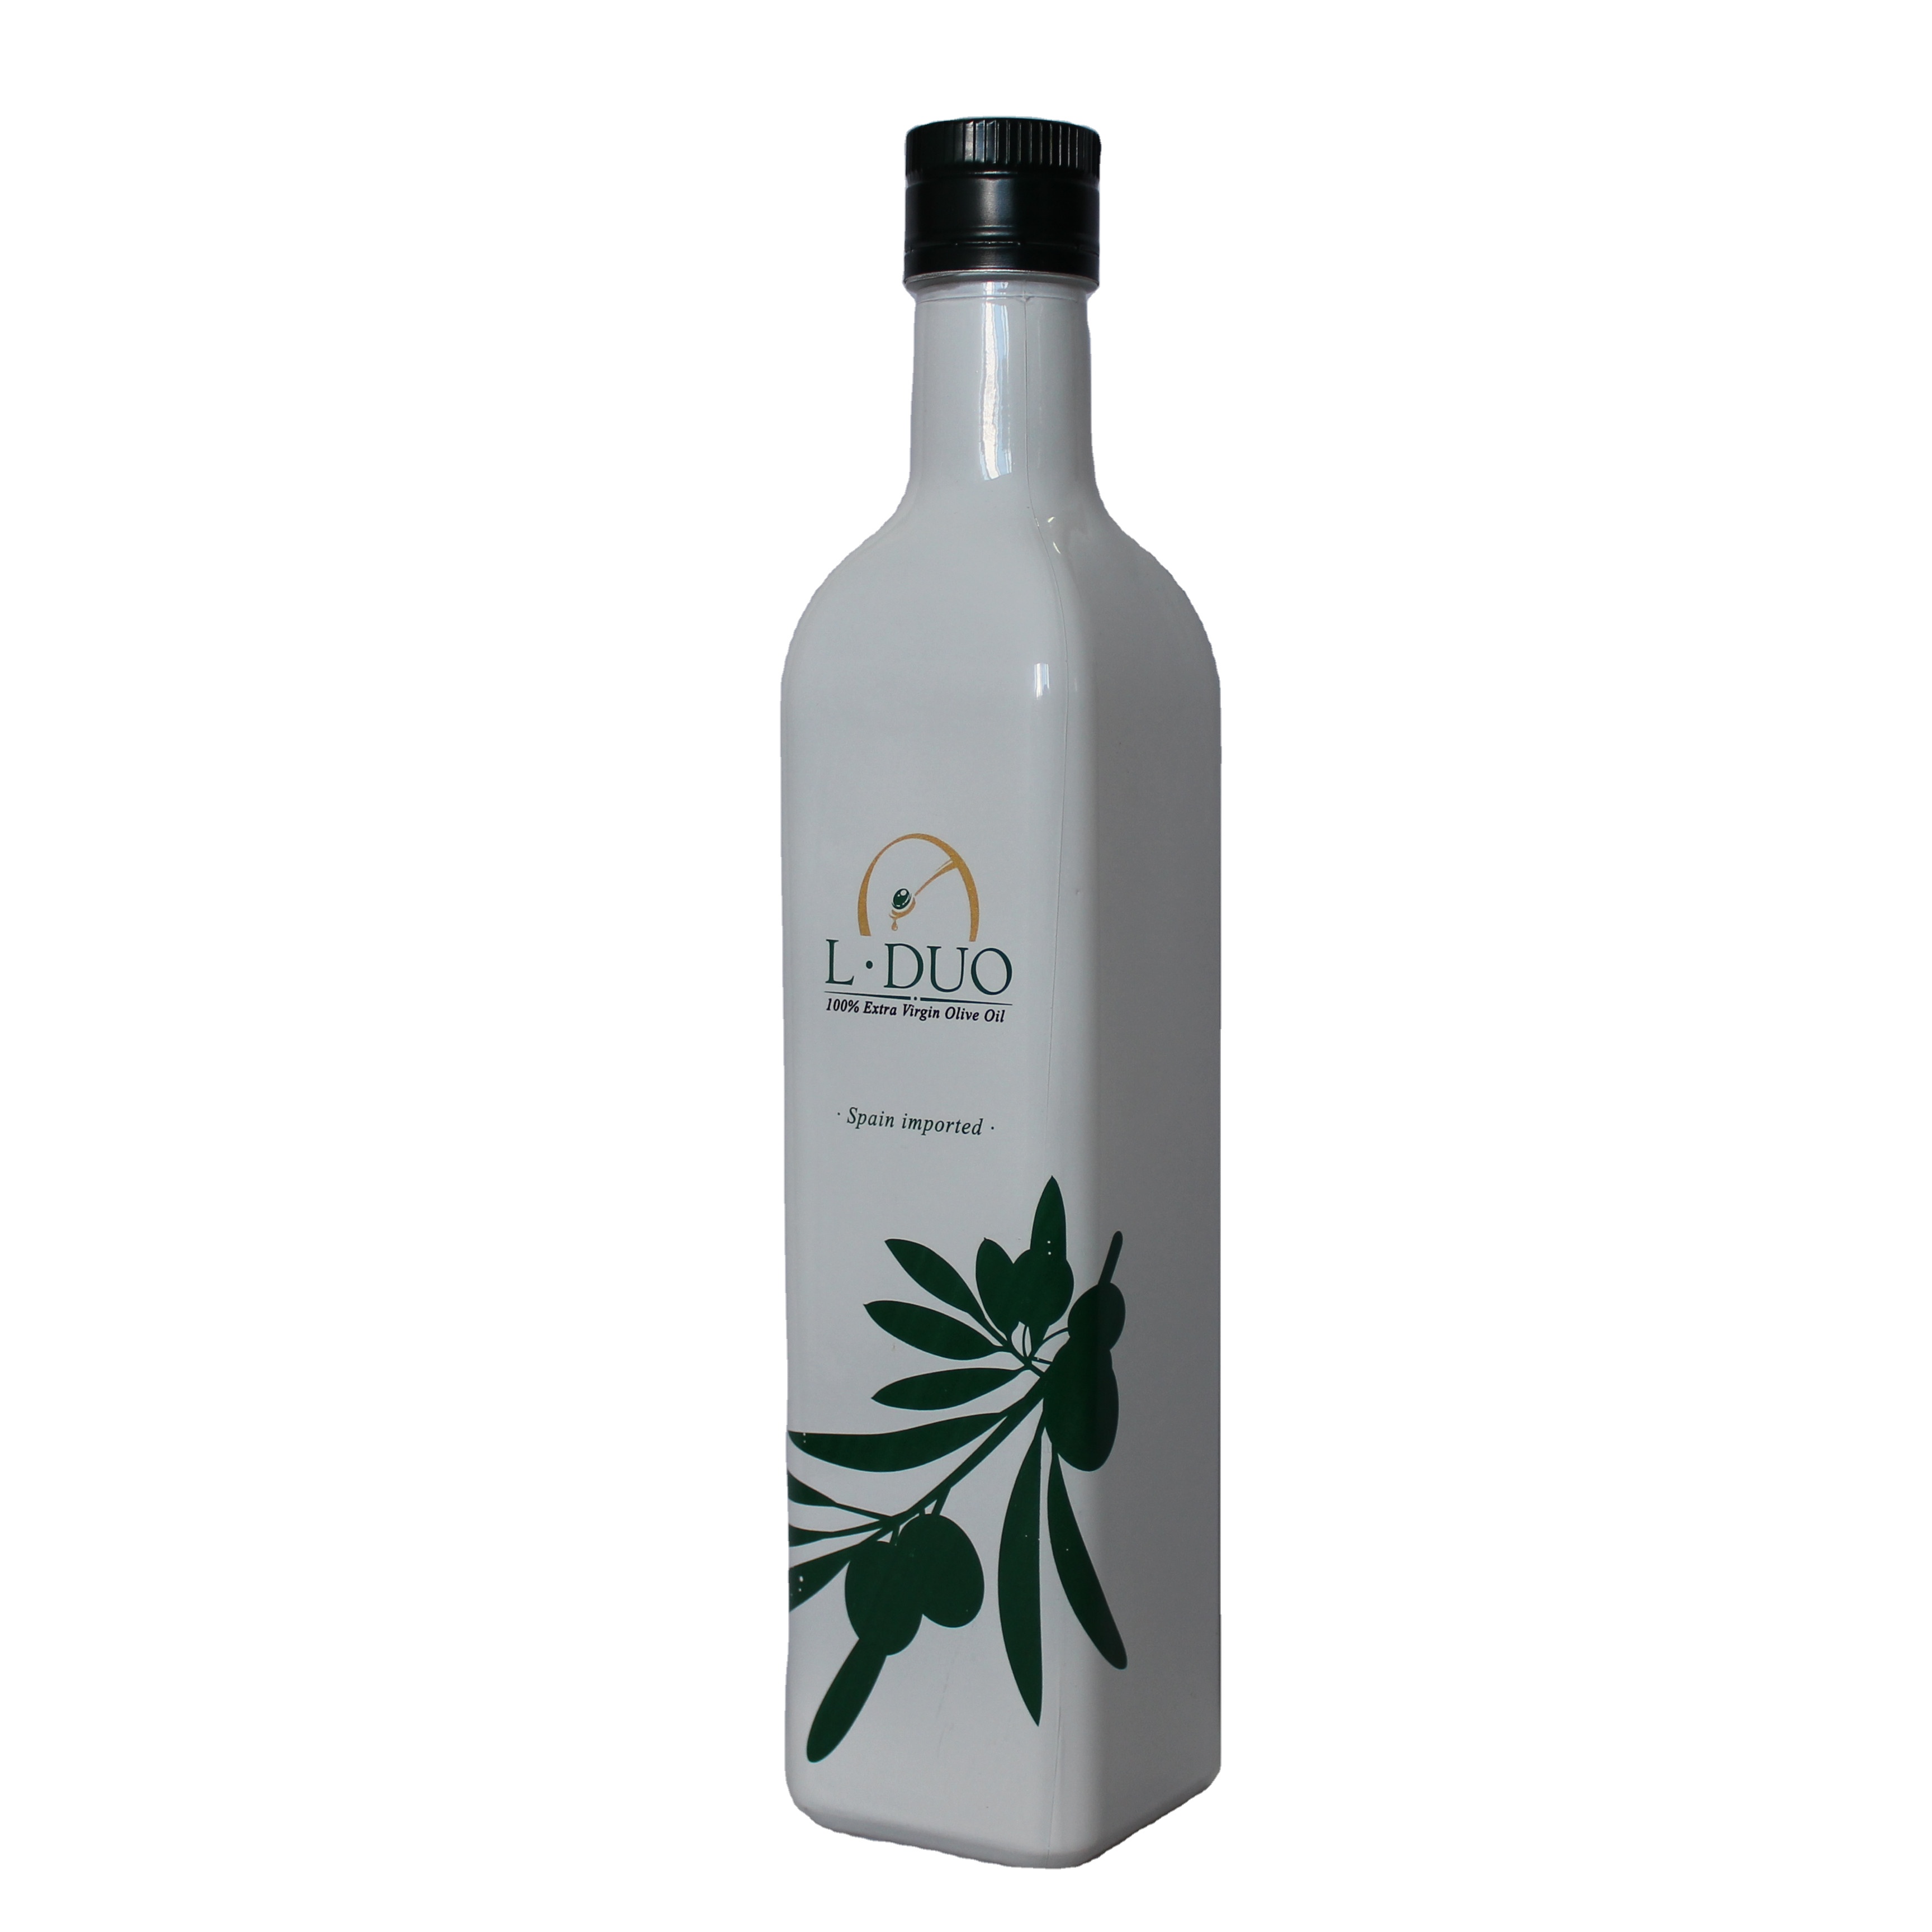 Erstklassige Farbspray-Olivenöl-Glasflasche